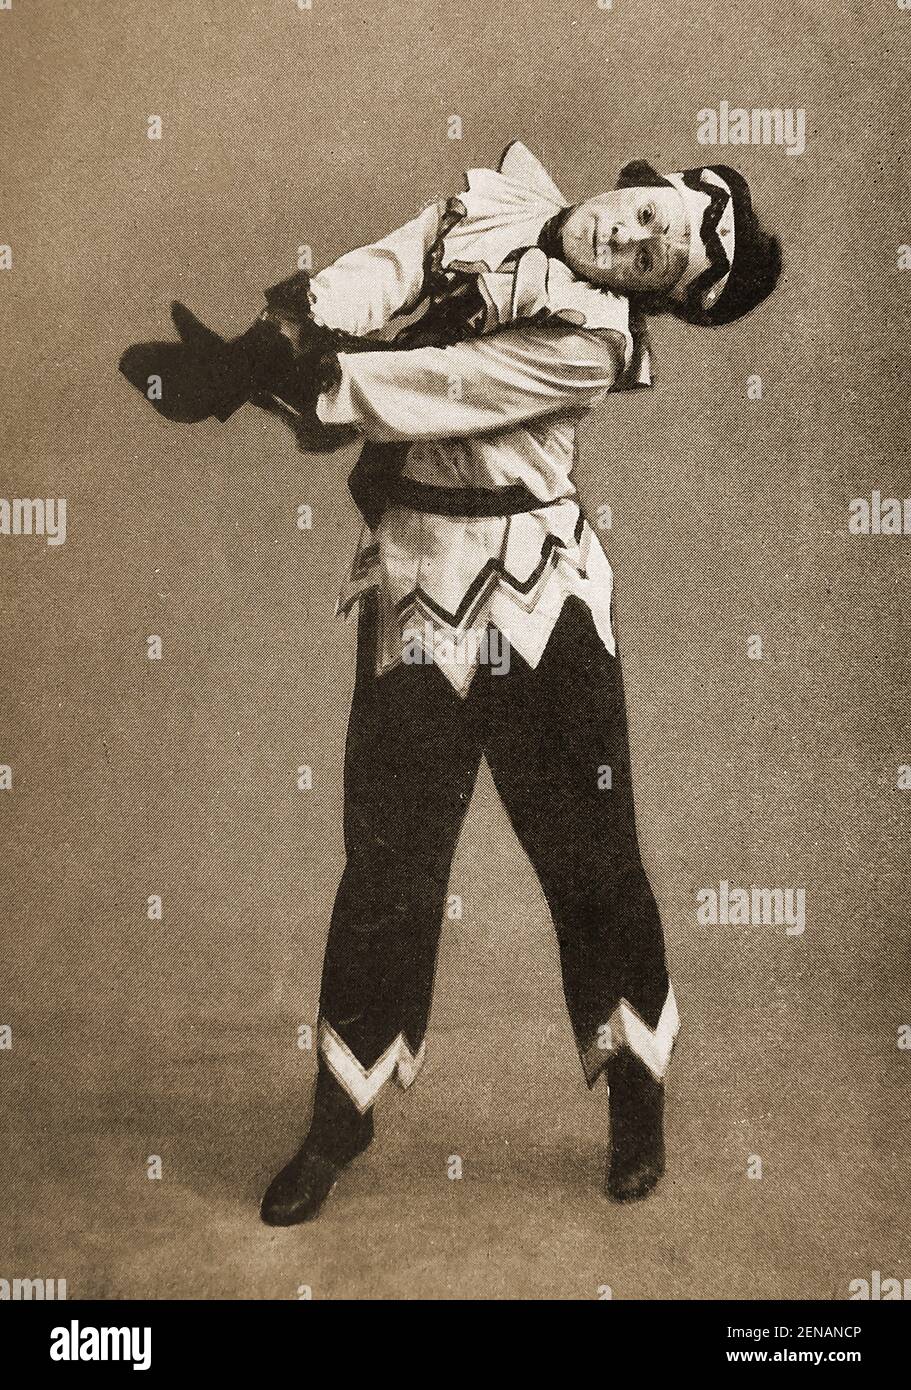 Balletttänzer & Choreograf Vaslav Nijinsky (1890-1950) in 'Petrouchka' (aka Petruschka) Geschrieben von Igor Strawinsky ) wurde in Kiew, Russland (jetzt in der Ukraine) geboren, hielt sich aber für polnisch, weil seine Eltern beide Polen waren. Er gilt von vielen als der größte männliche Tänzer des frühen 20th. Jahrhunderts. Während des Ersten Weltkrieges wurde er in Budapest, Ungarn, während des Ersten Weltkrieges interniert und blieb bis 1916 unter Hausarrest. Stockfoto